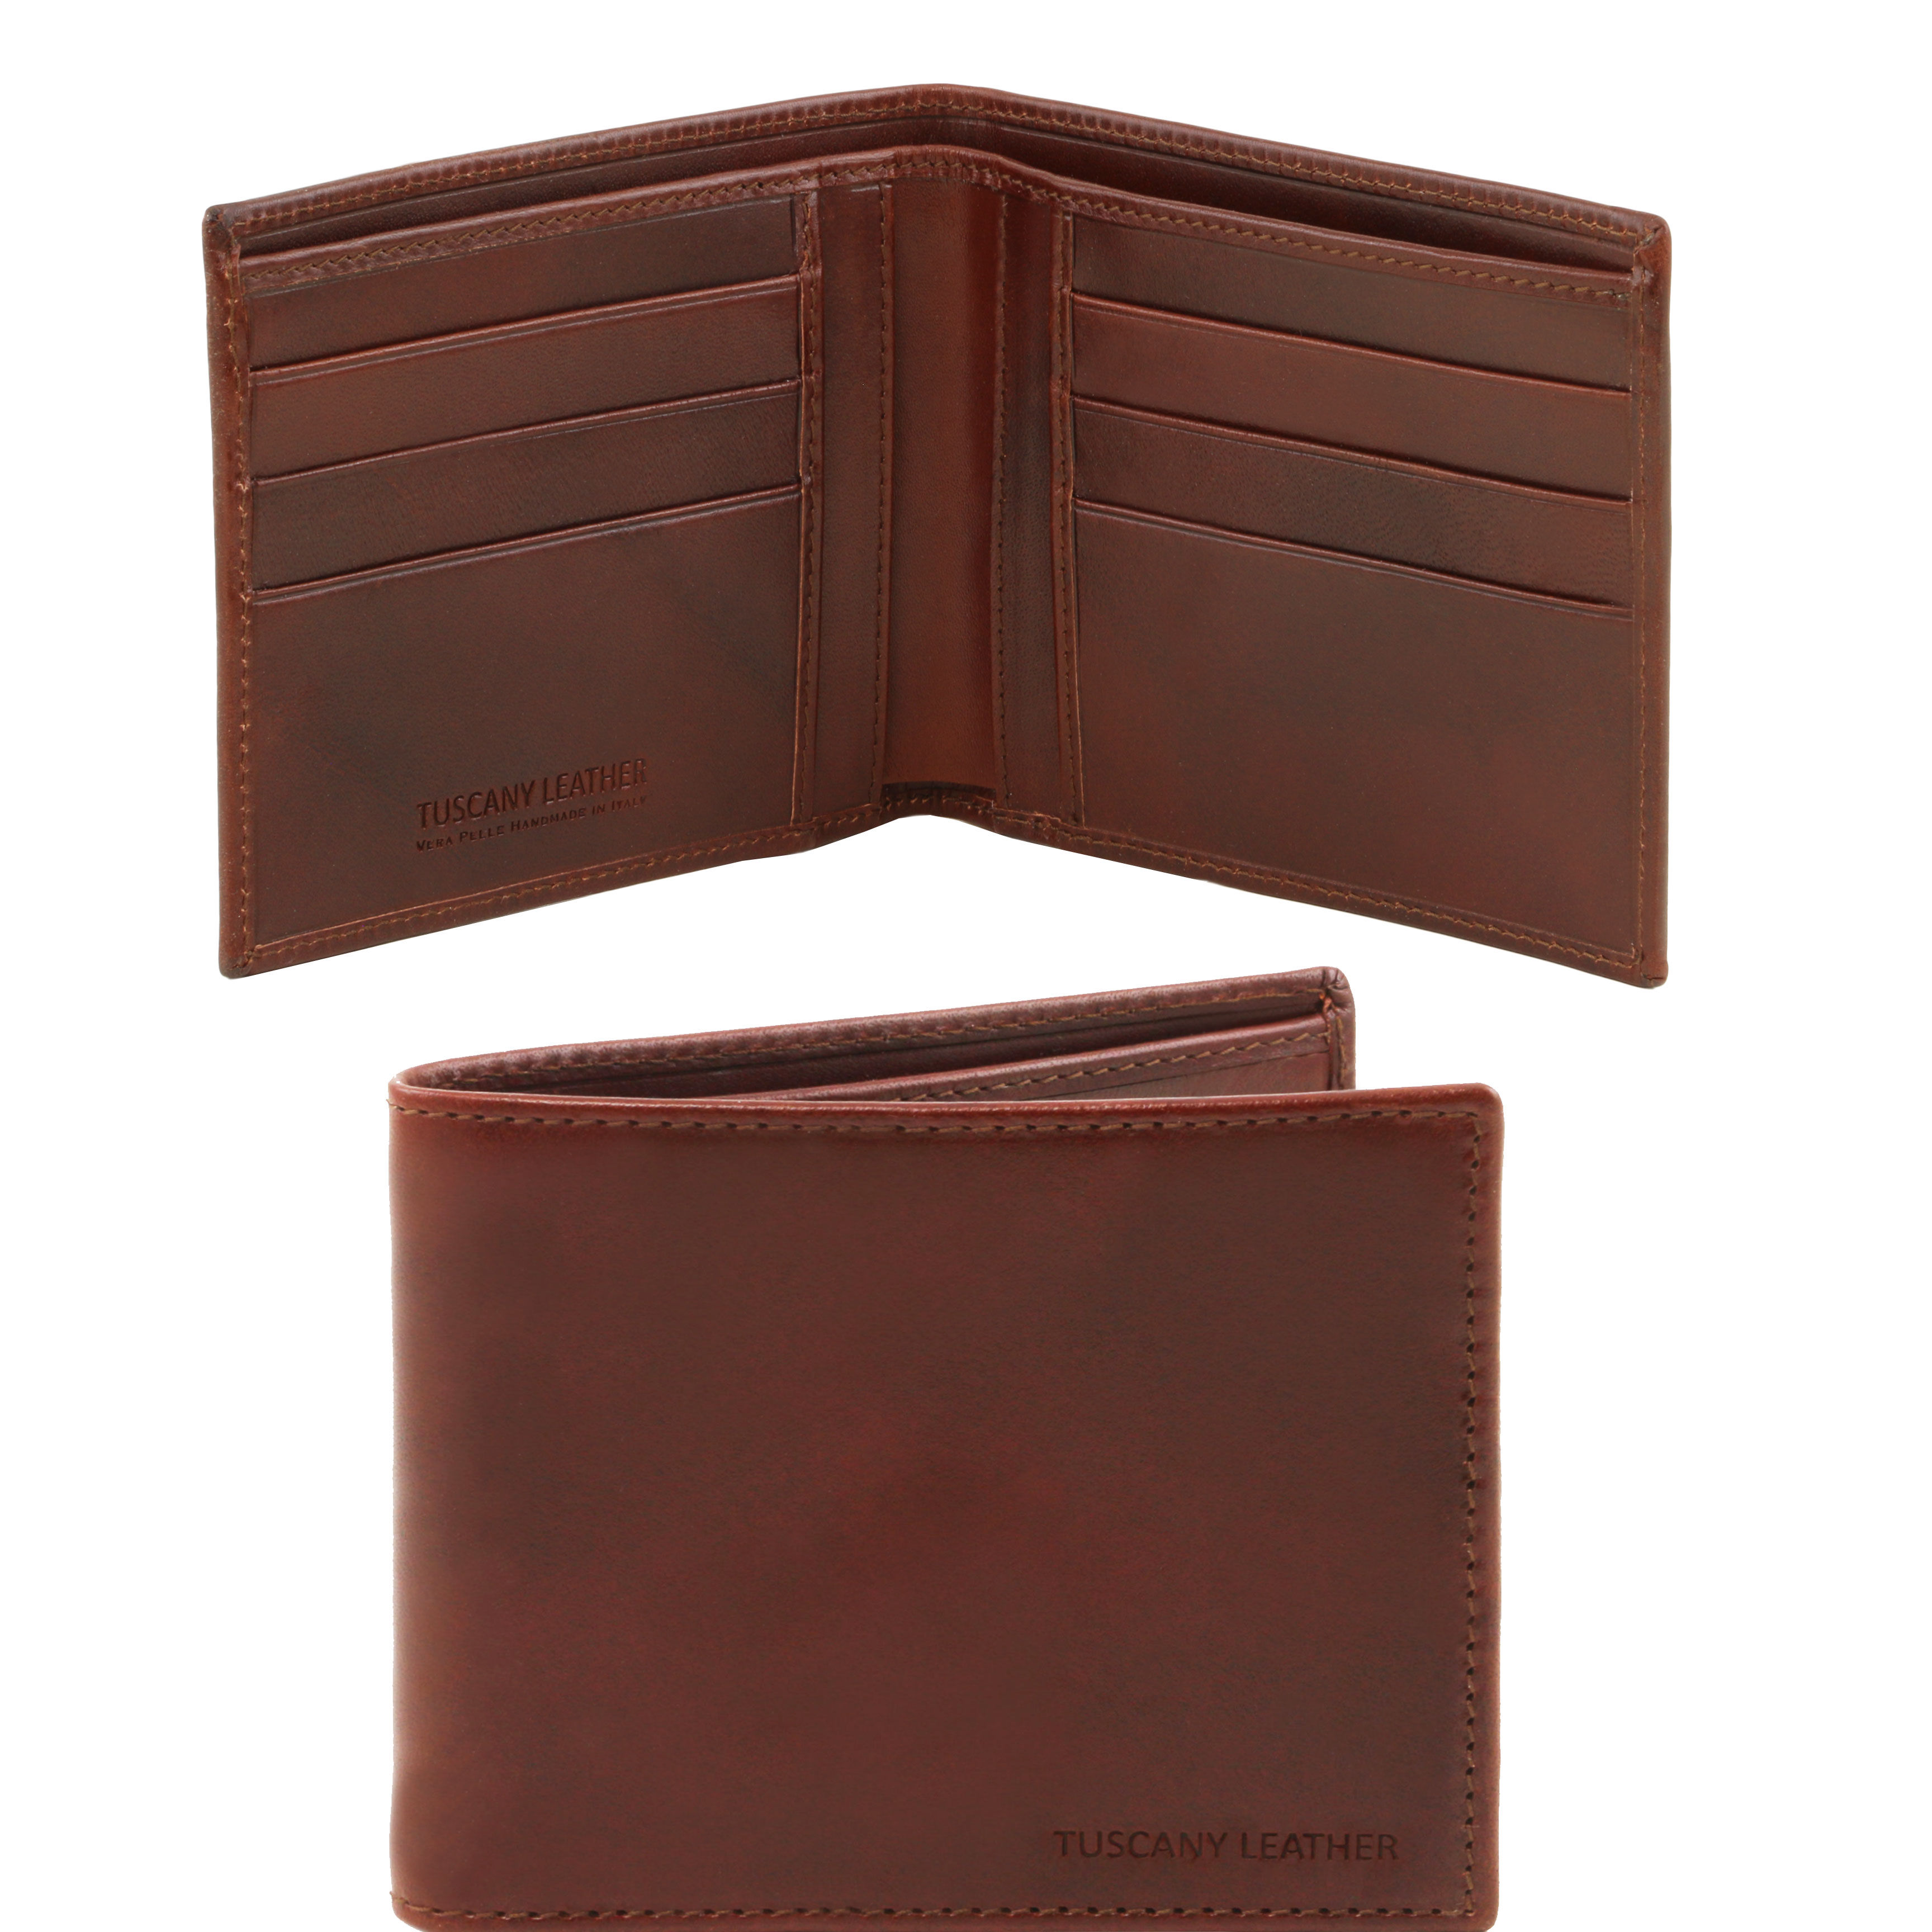 Portofel Tuscany Leather din piele maro 2 fold